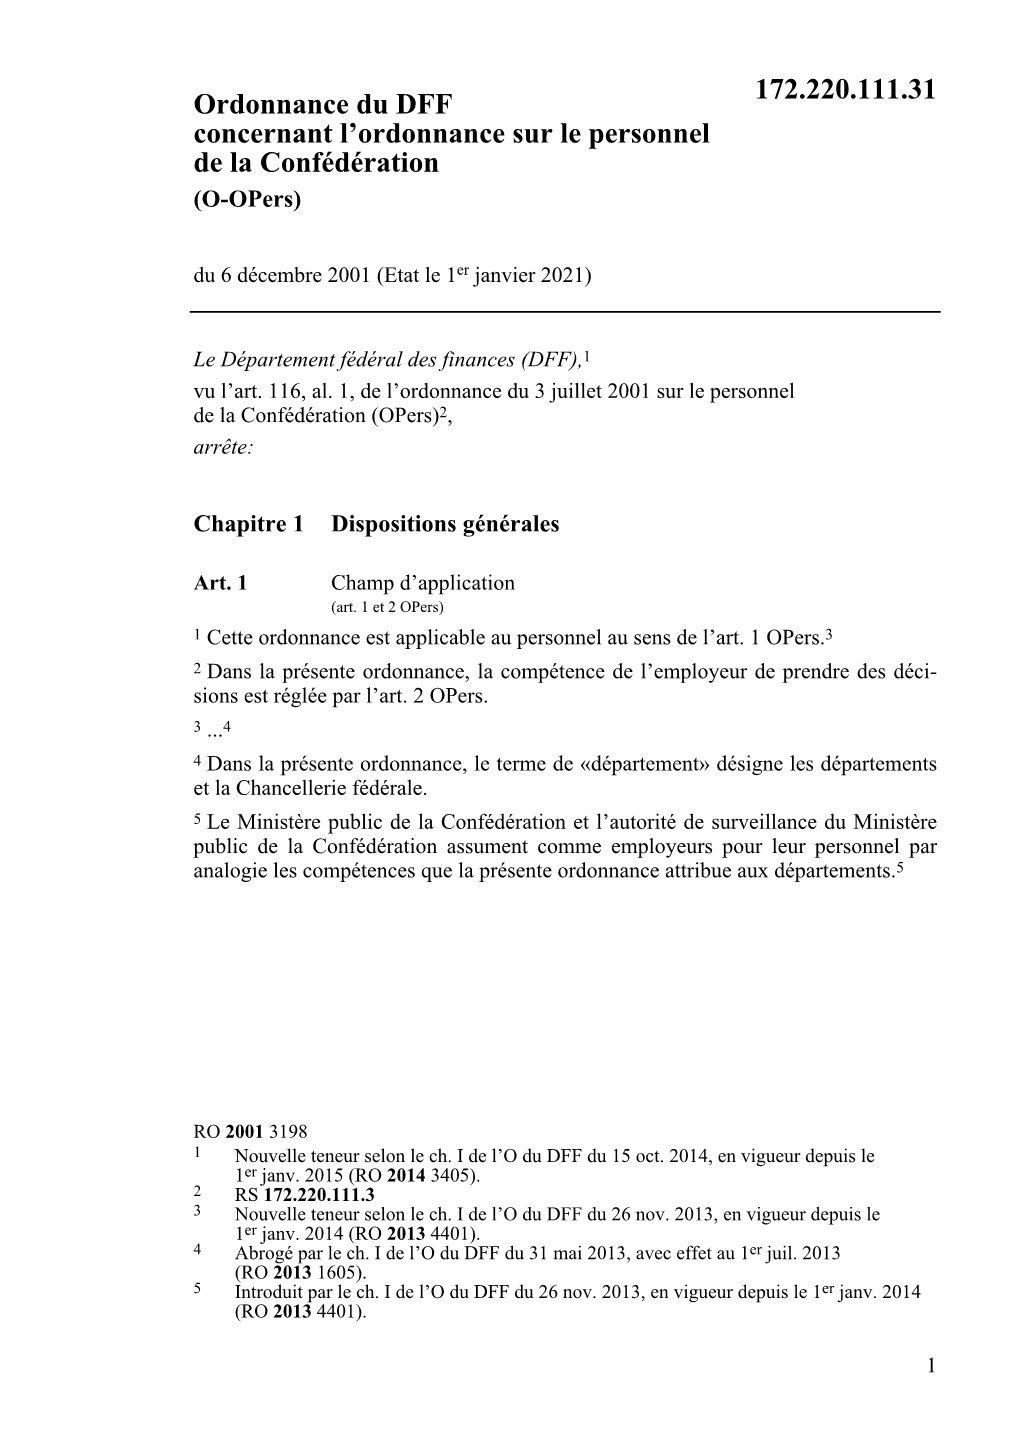 Ordonnance Du DFF Concernant L'ordonnance Sur Le Personnel De La Confédération 172.220.111.31